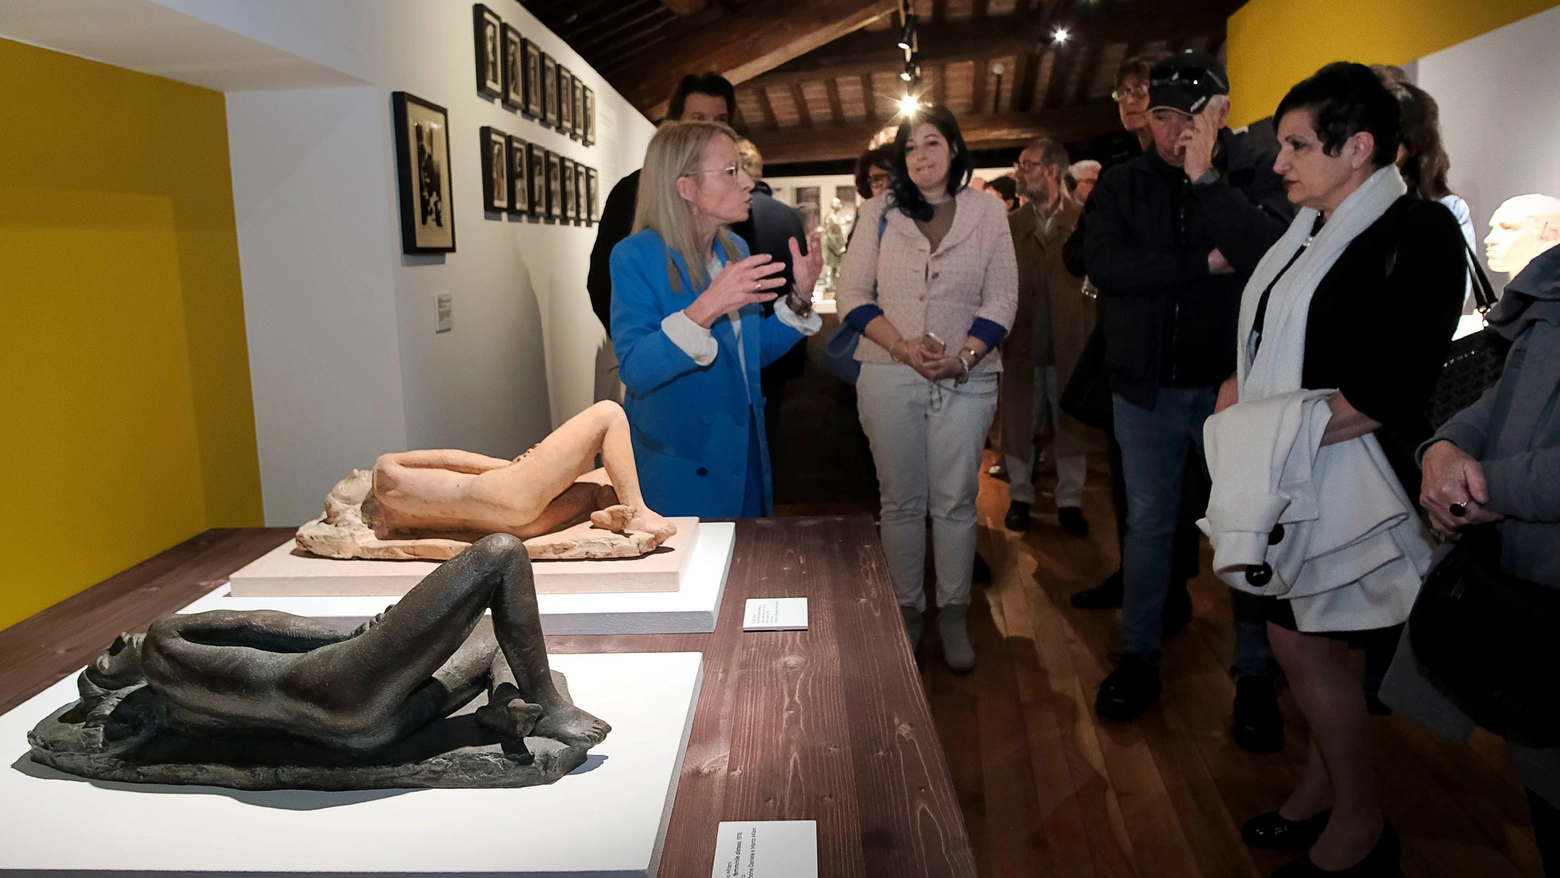 Fino al 25 giugno, con ingresso gratuito, la mostra “Virgilio Milani e l’Arte del ‘900 in Polesine”, che racconta gli sviluppi artistici di un secolo di intensi cambiamenti